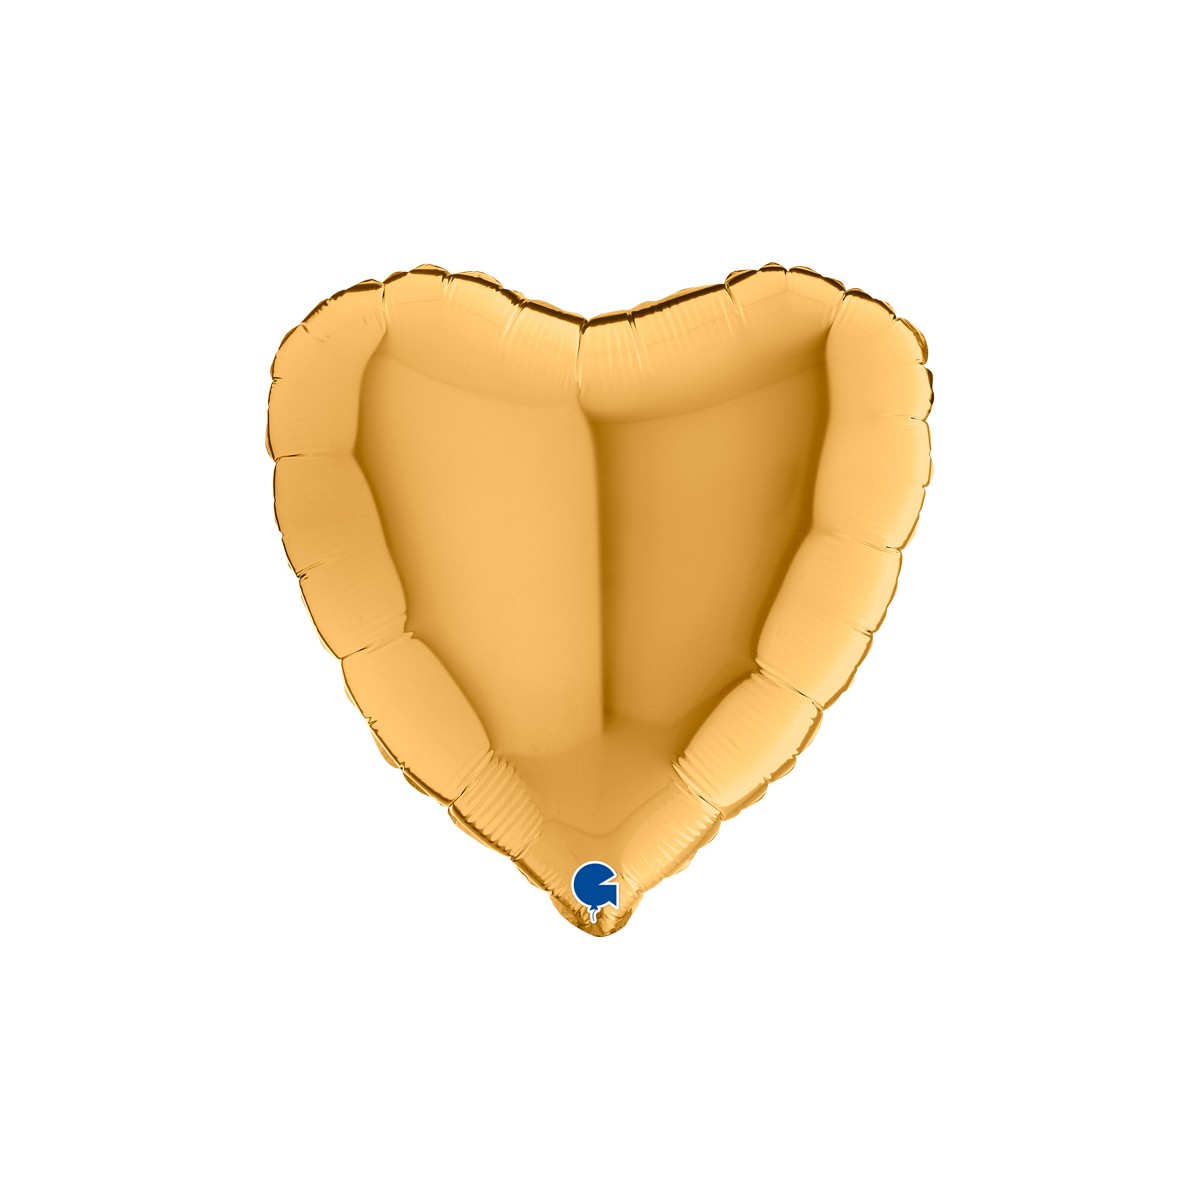 Shape cuore 18"/45cm oro antico Grabo confezionato 1pz.